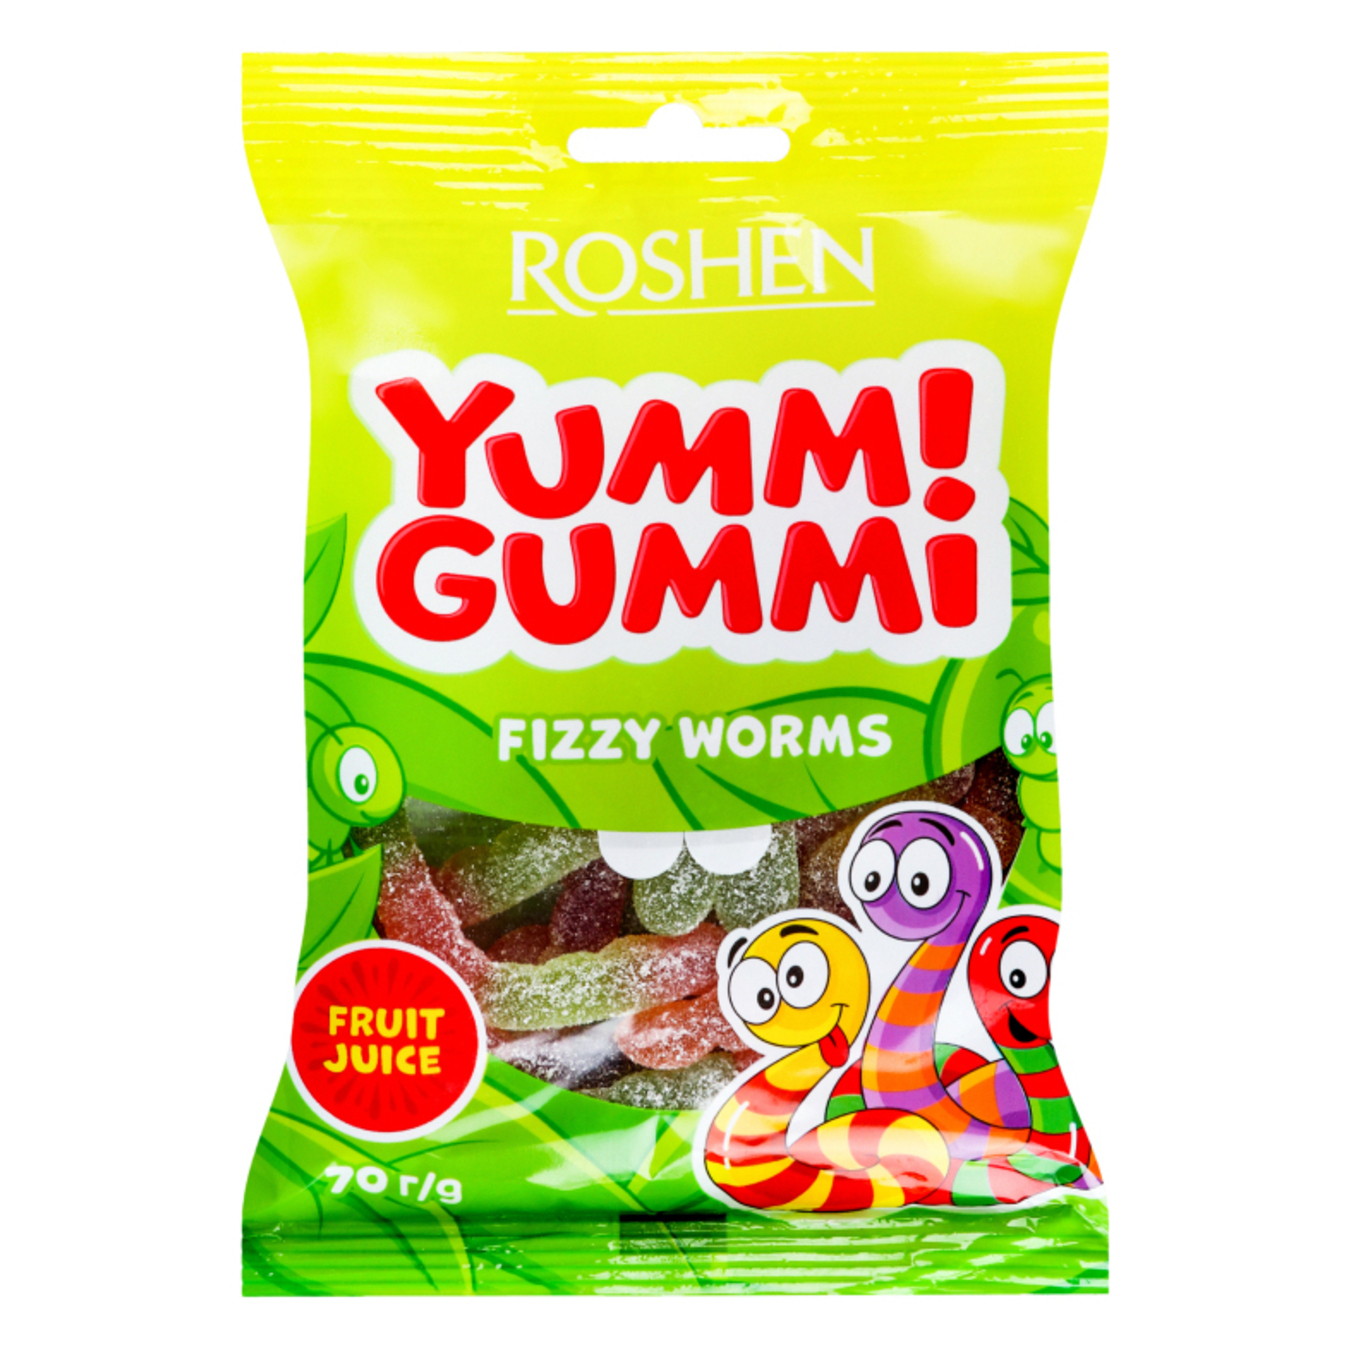 Roshen Yummi Gummi Fizzy Worms jelly candies 70g